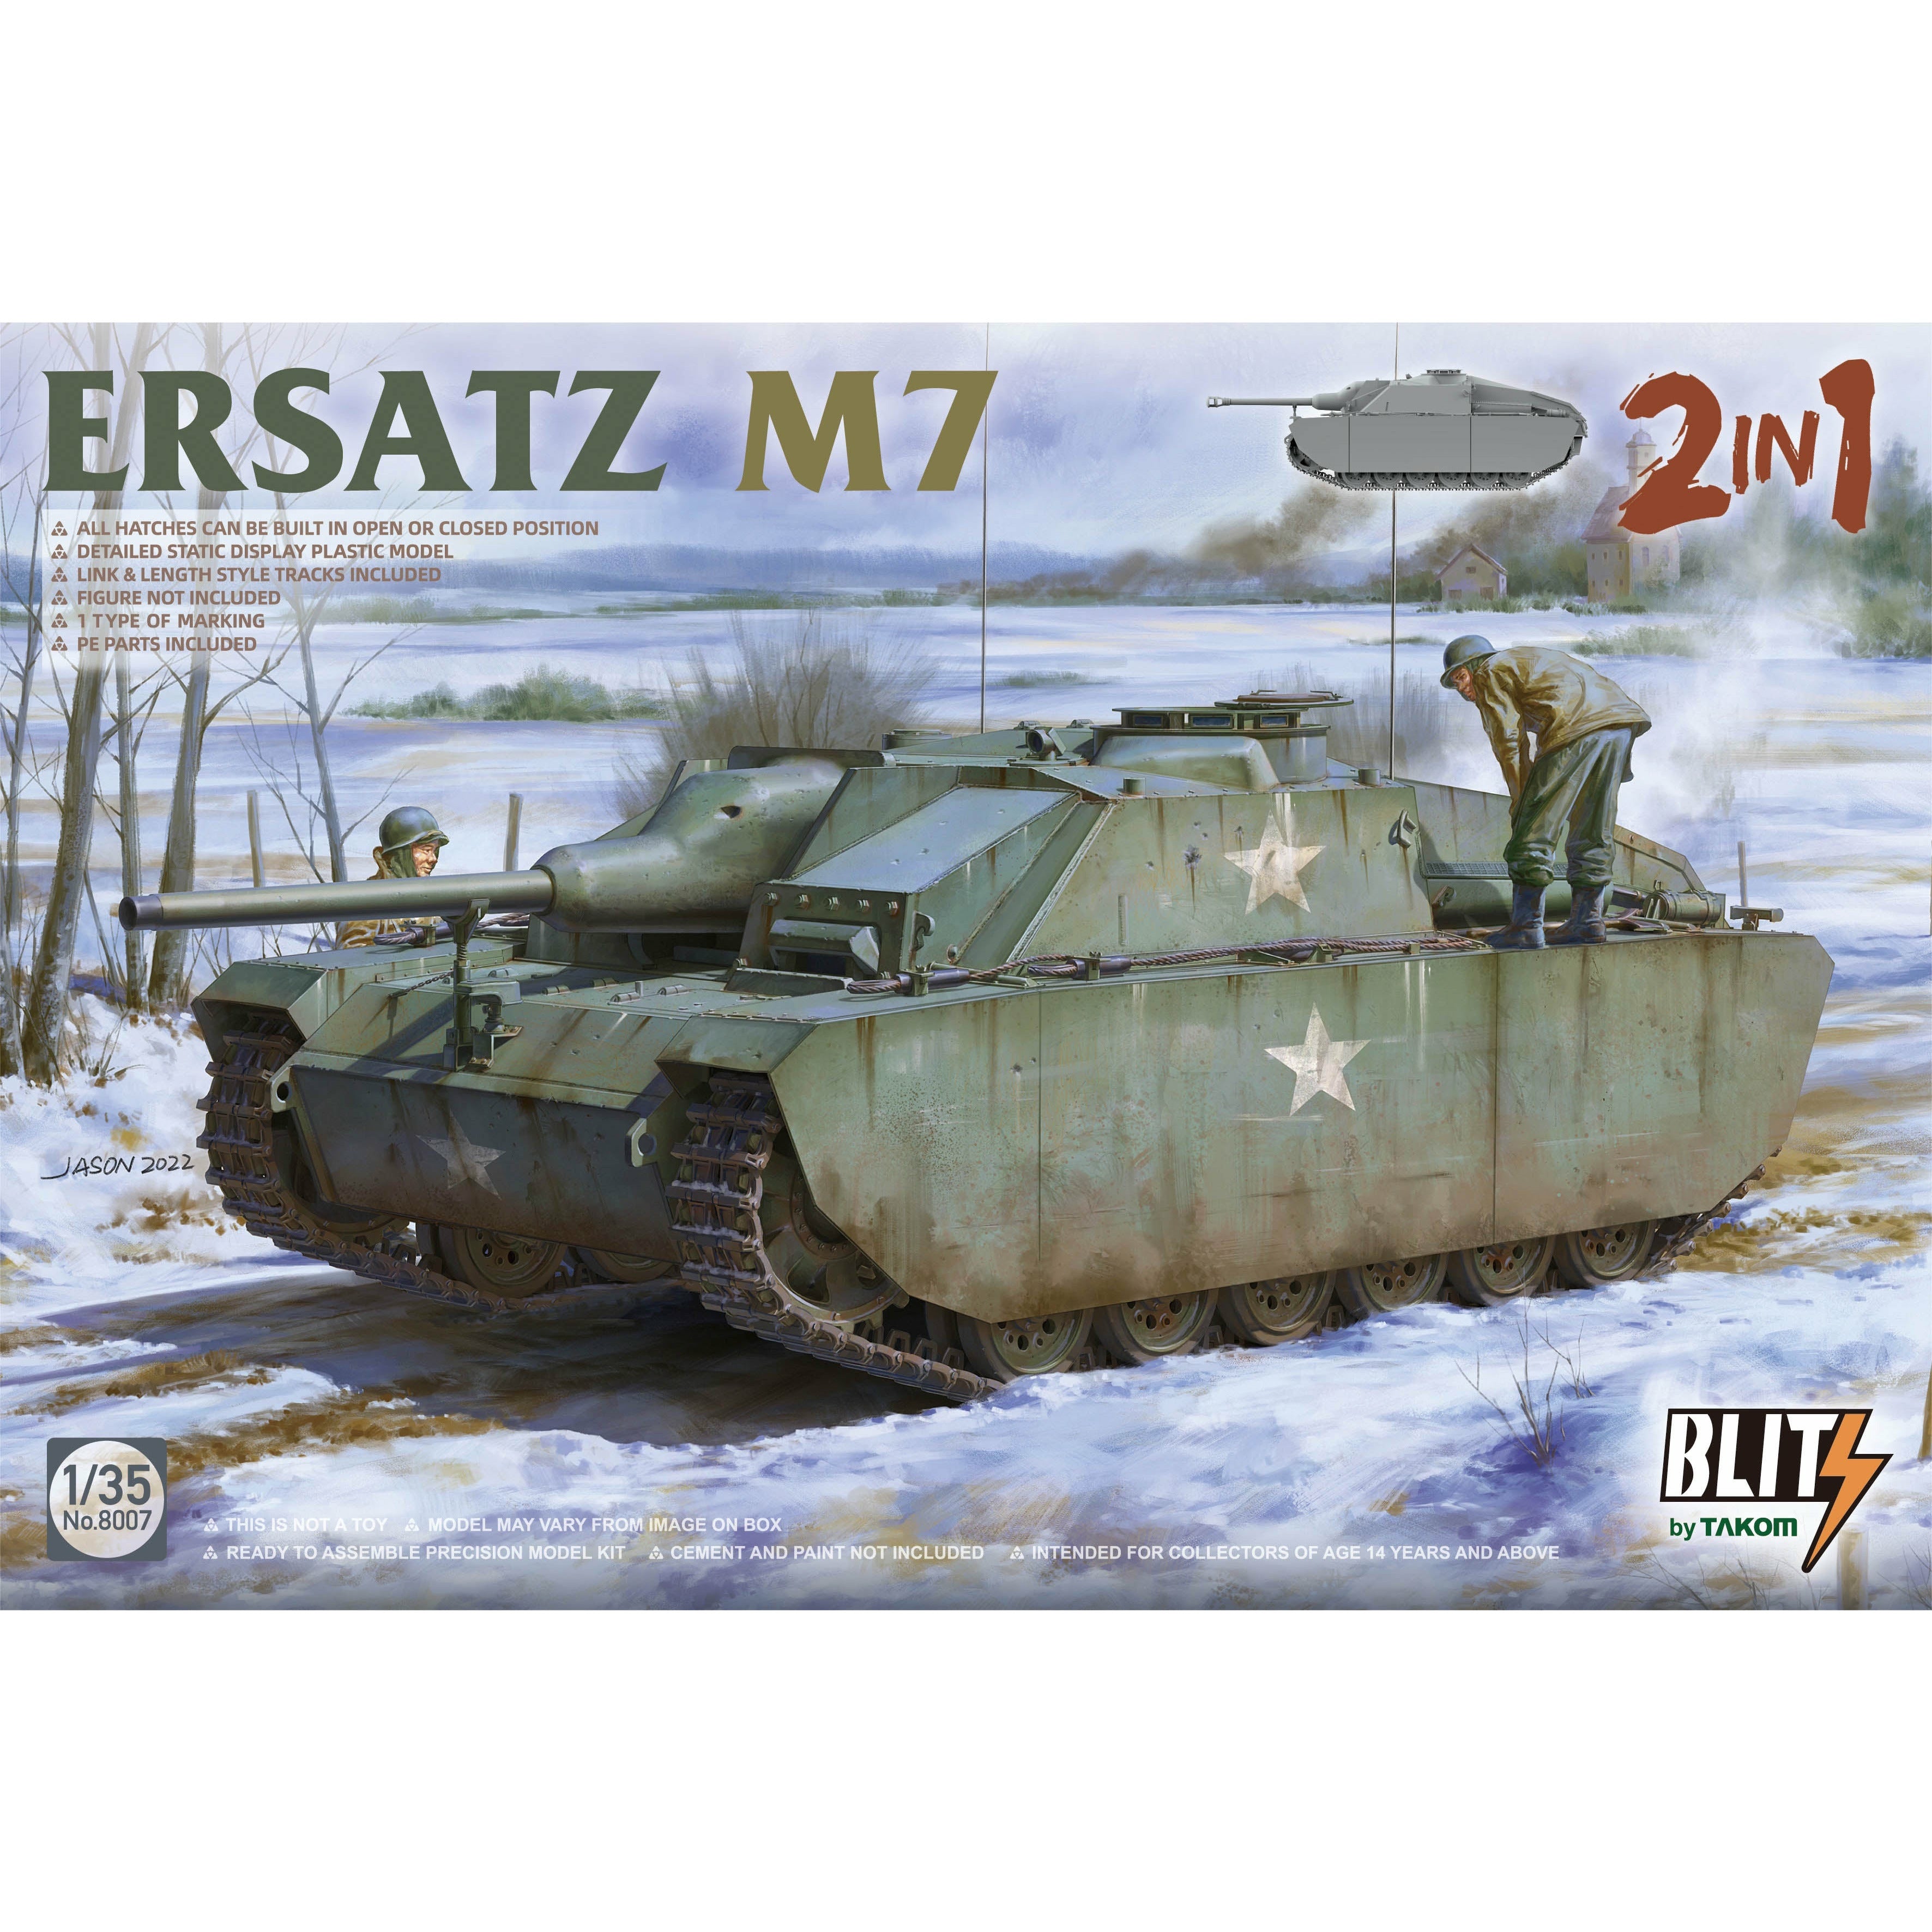 Ersatz M7 2 In 1 1/35 #8007 by Takom